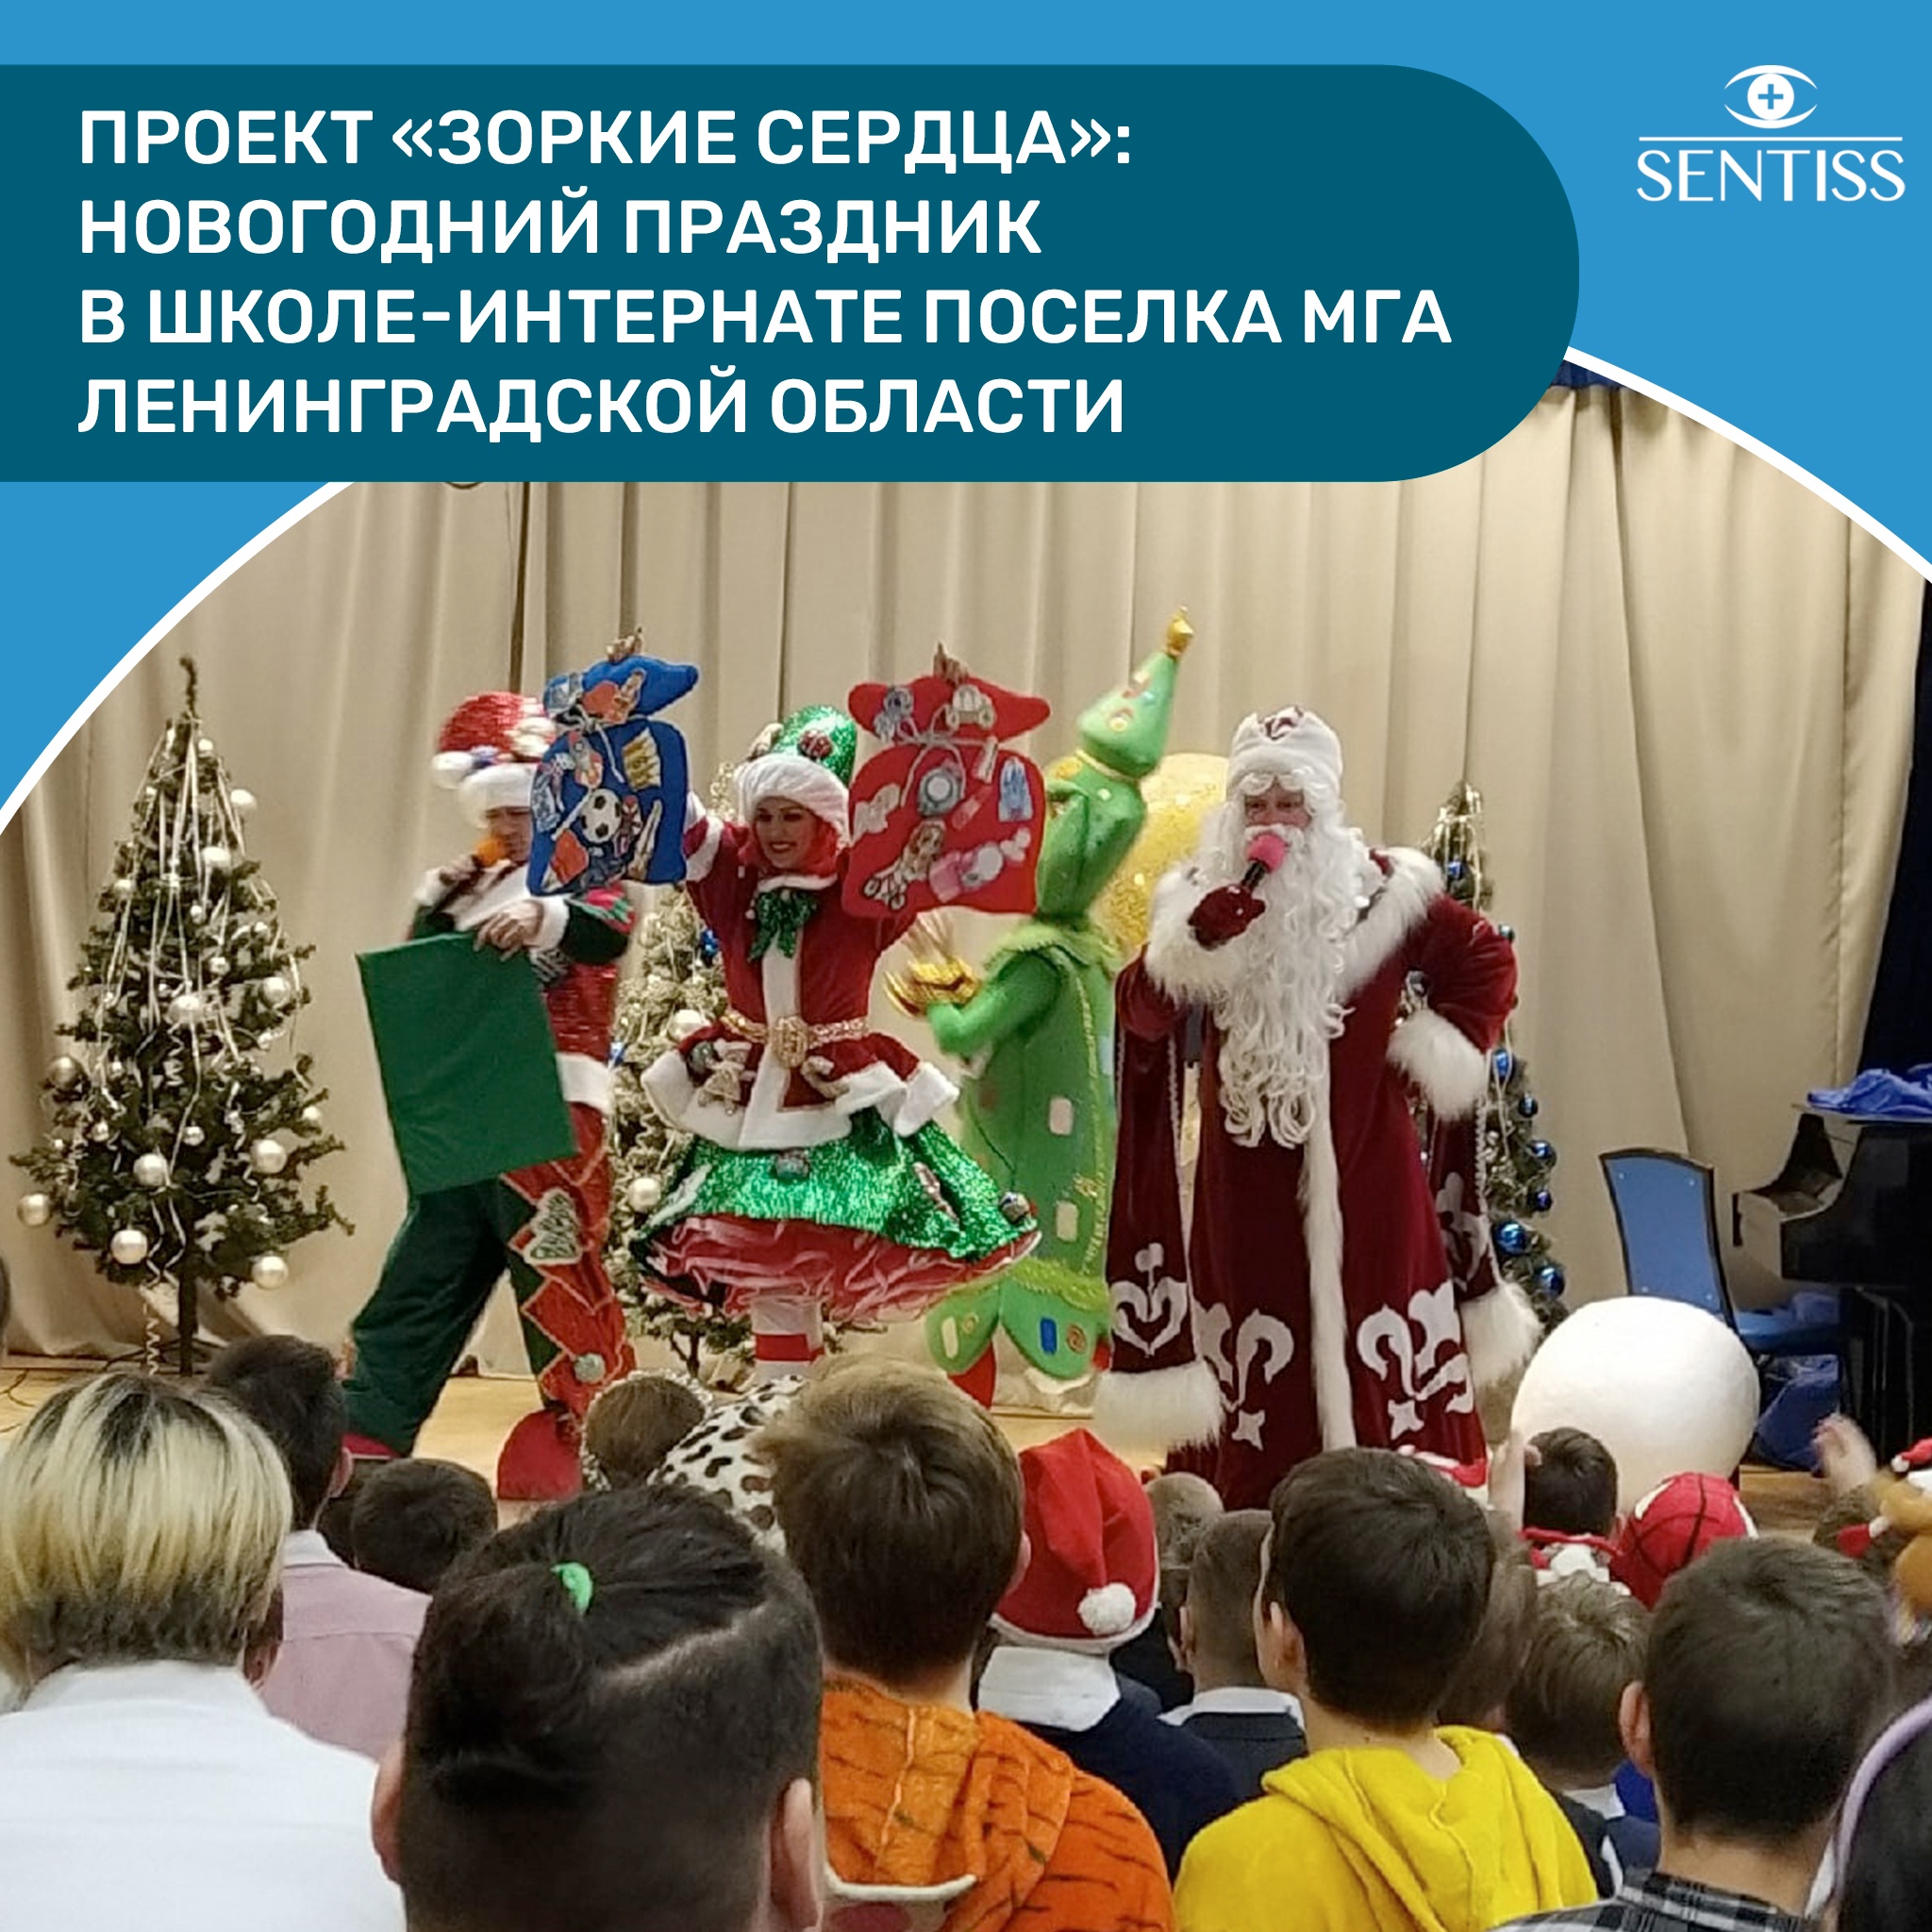 Новогодний праздник в школе-интернате поселка МГА Ленинградской области